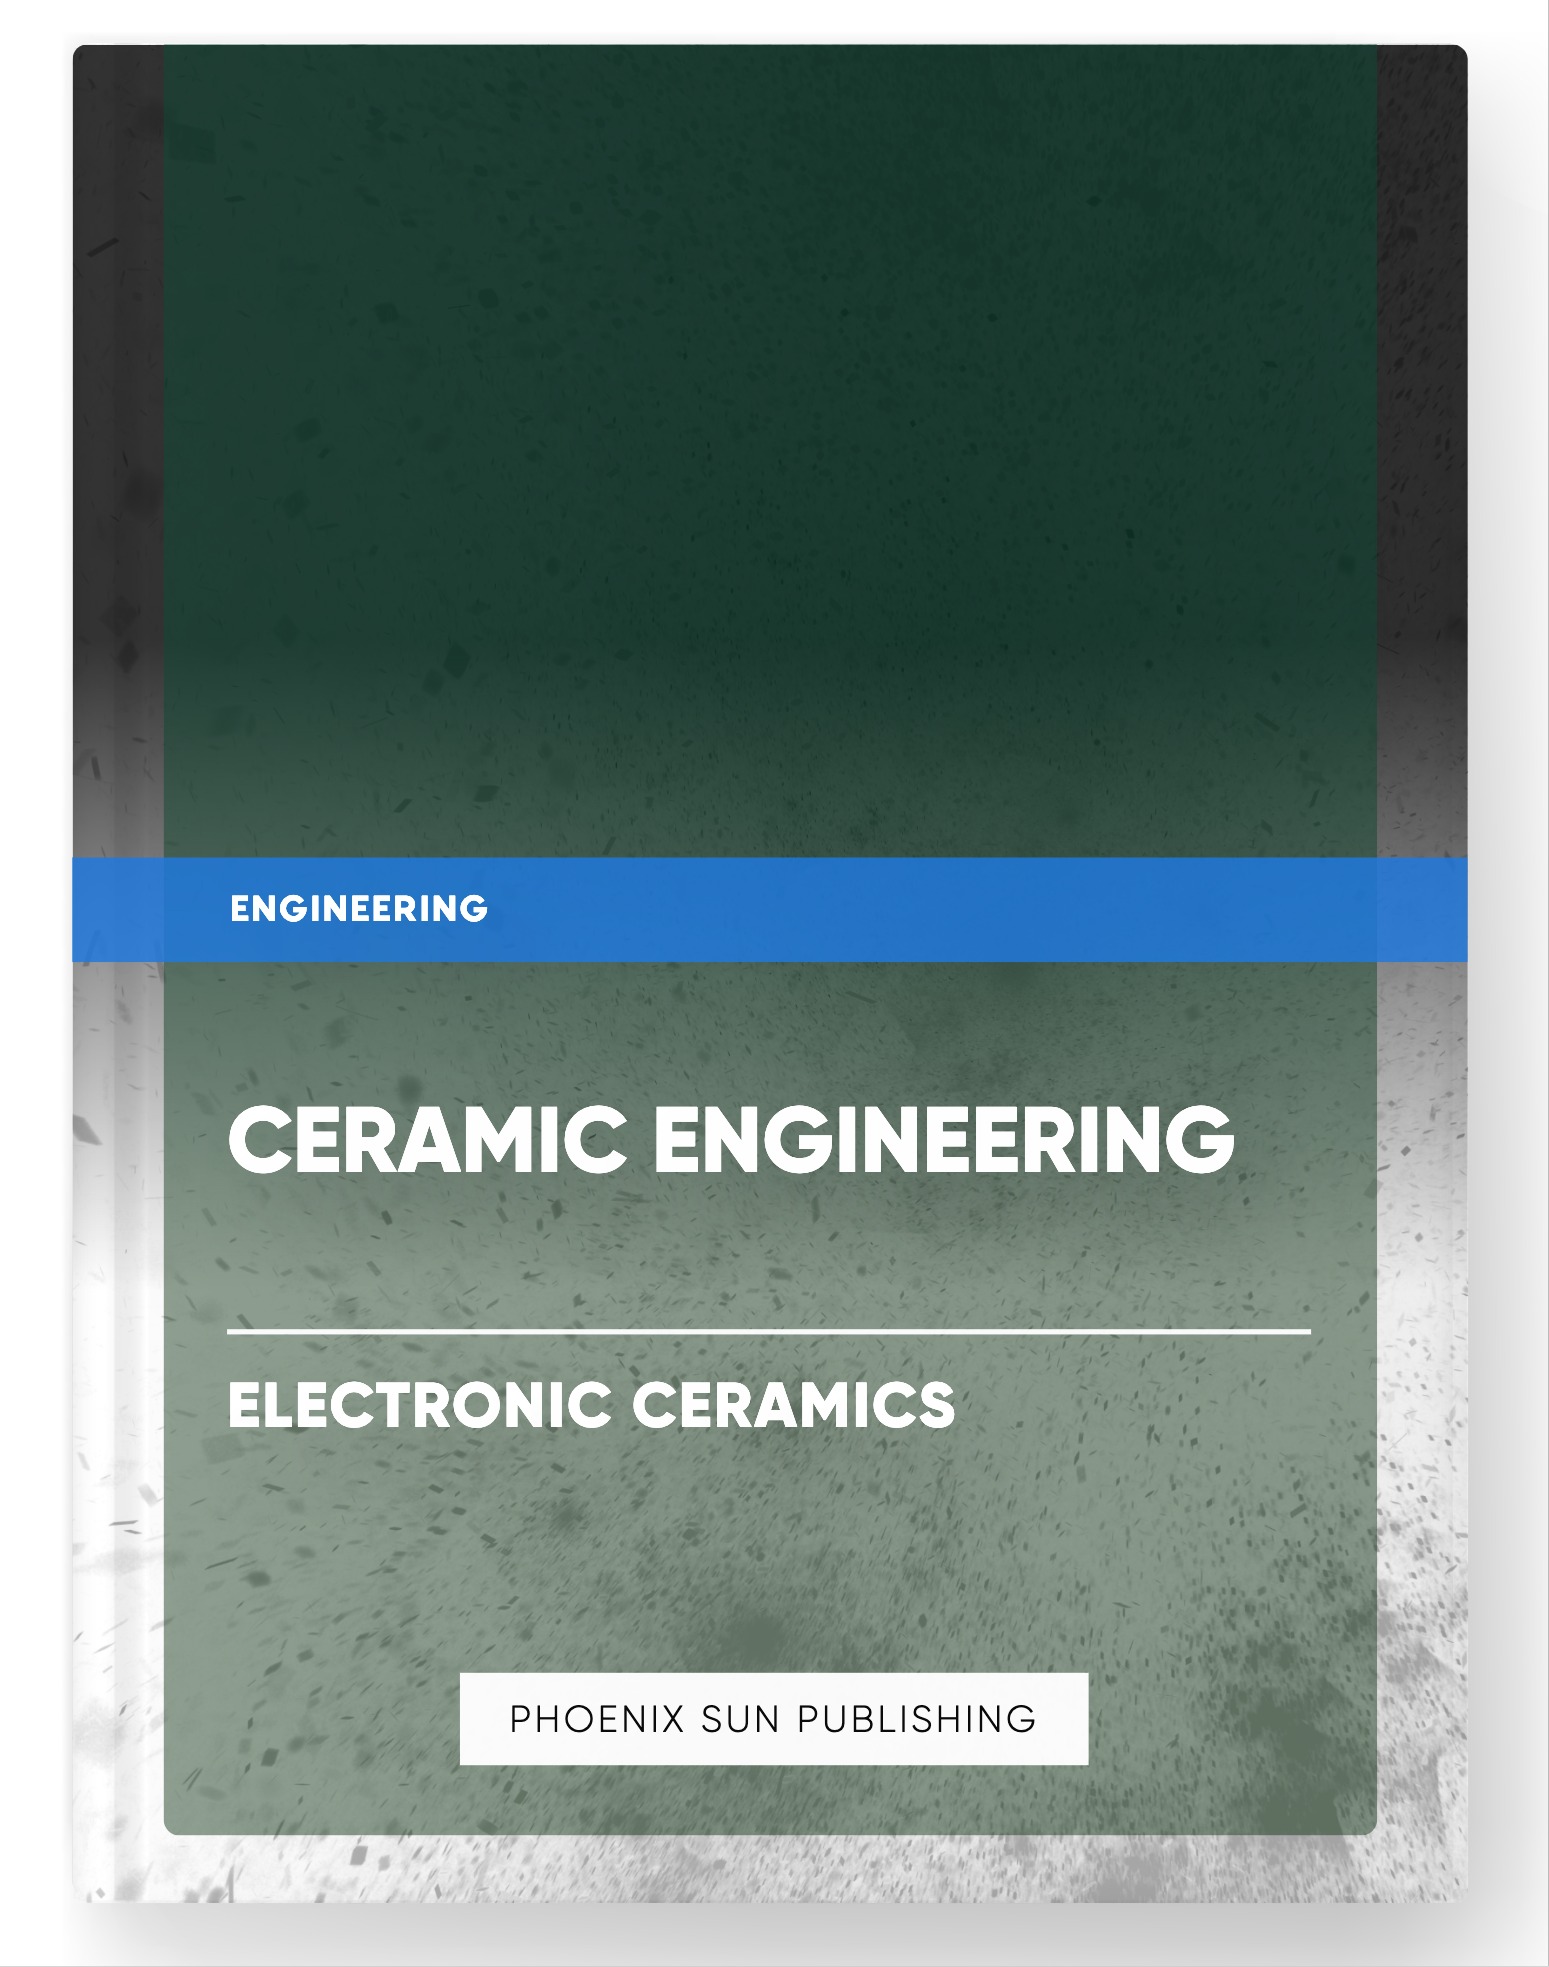 Ceramic Engineering – Electronic Ceramics